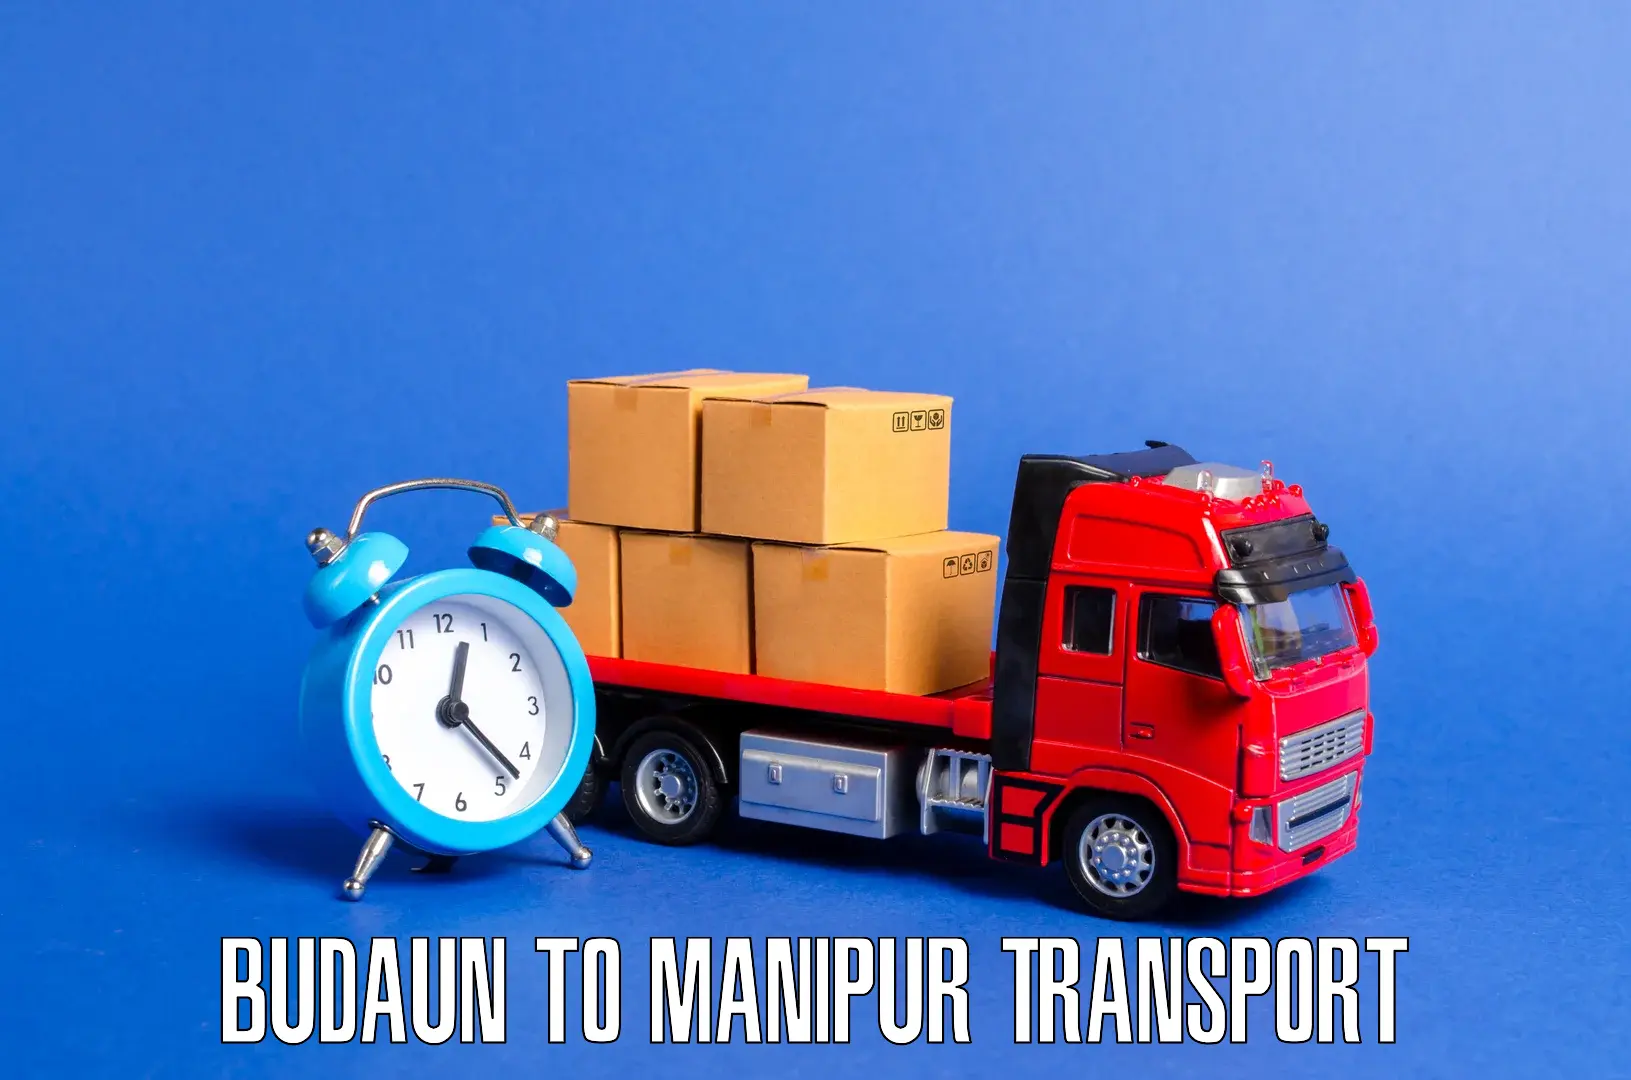 Commercial transport service Budaun to Kaptipada